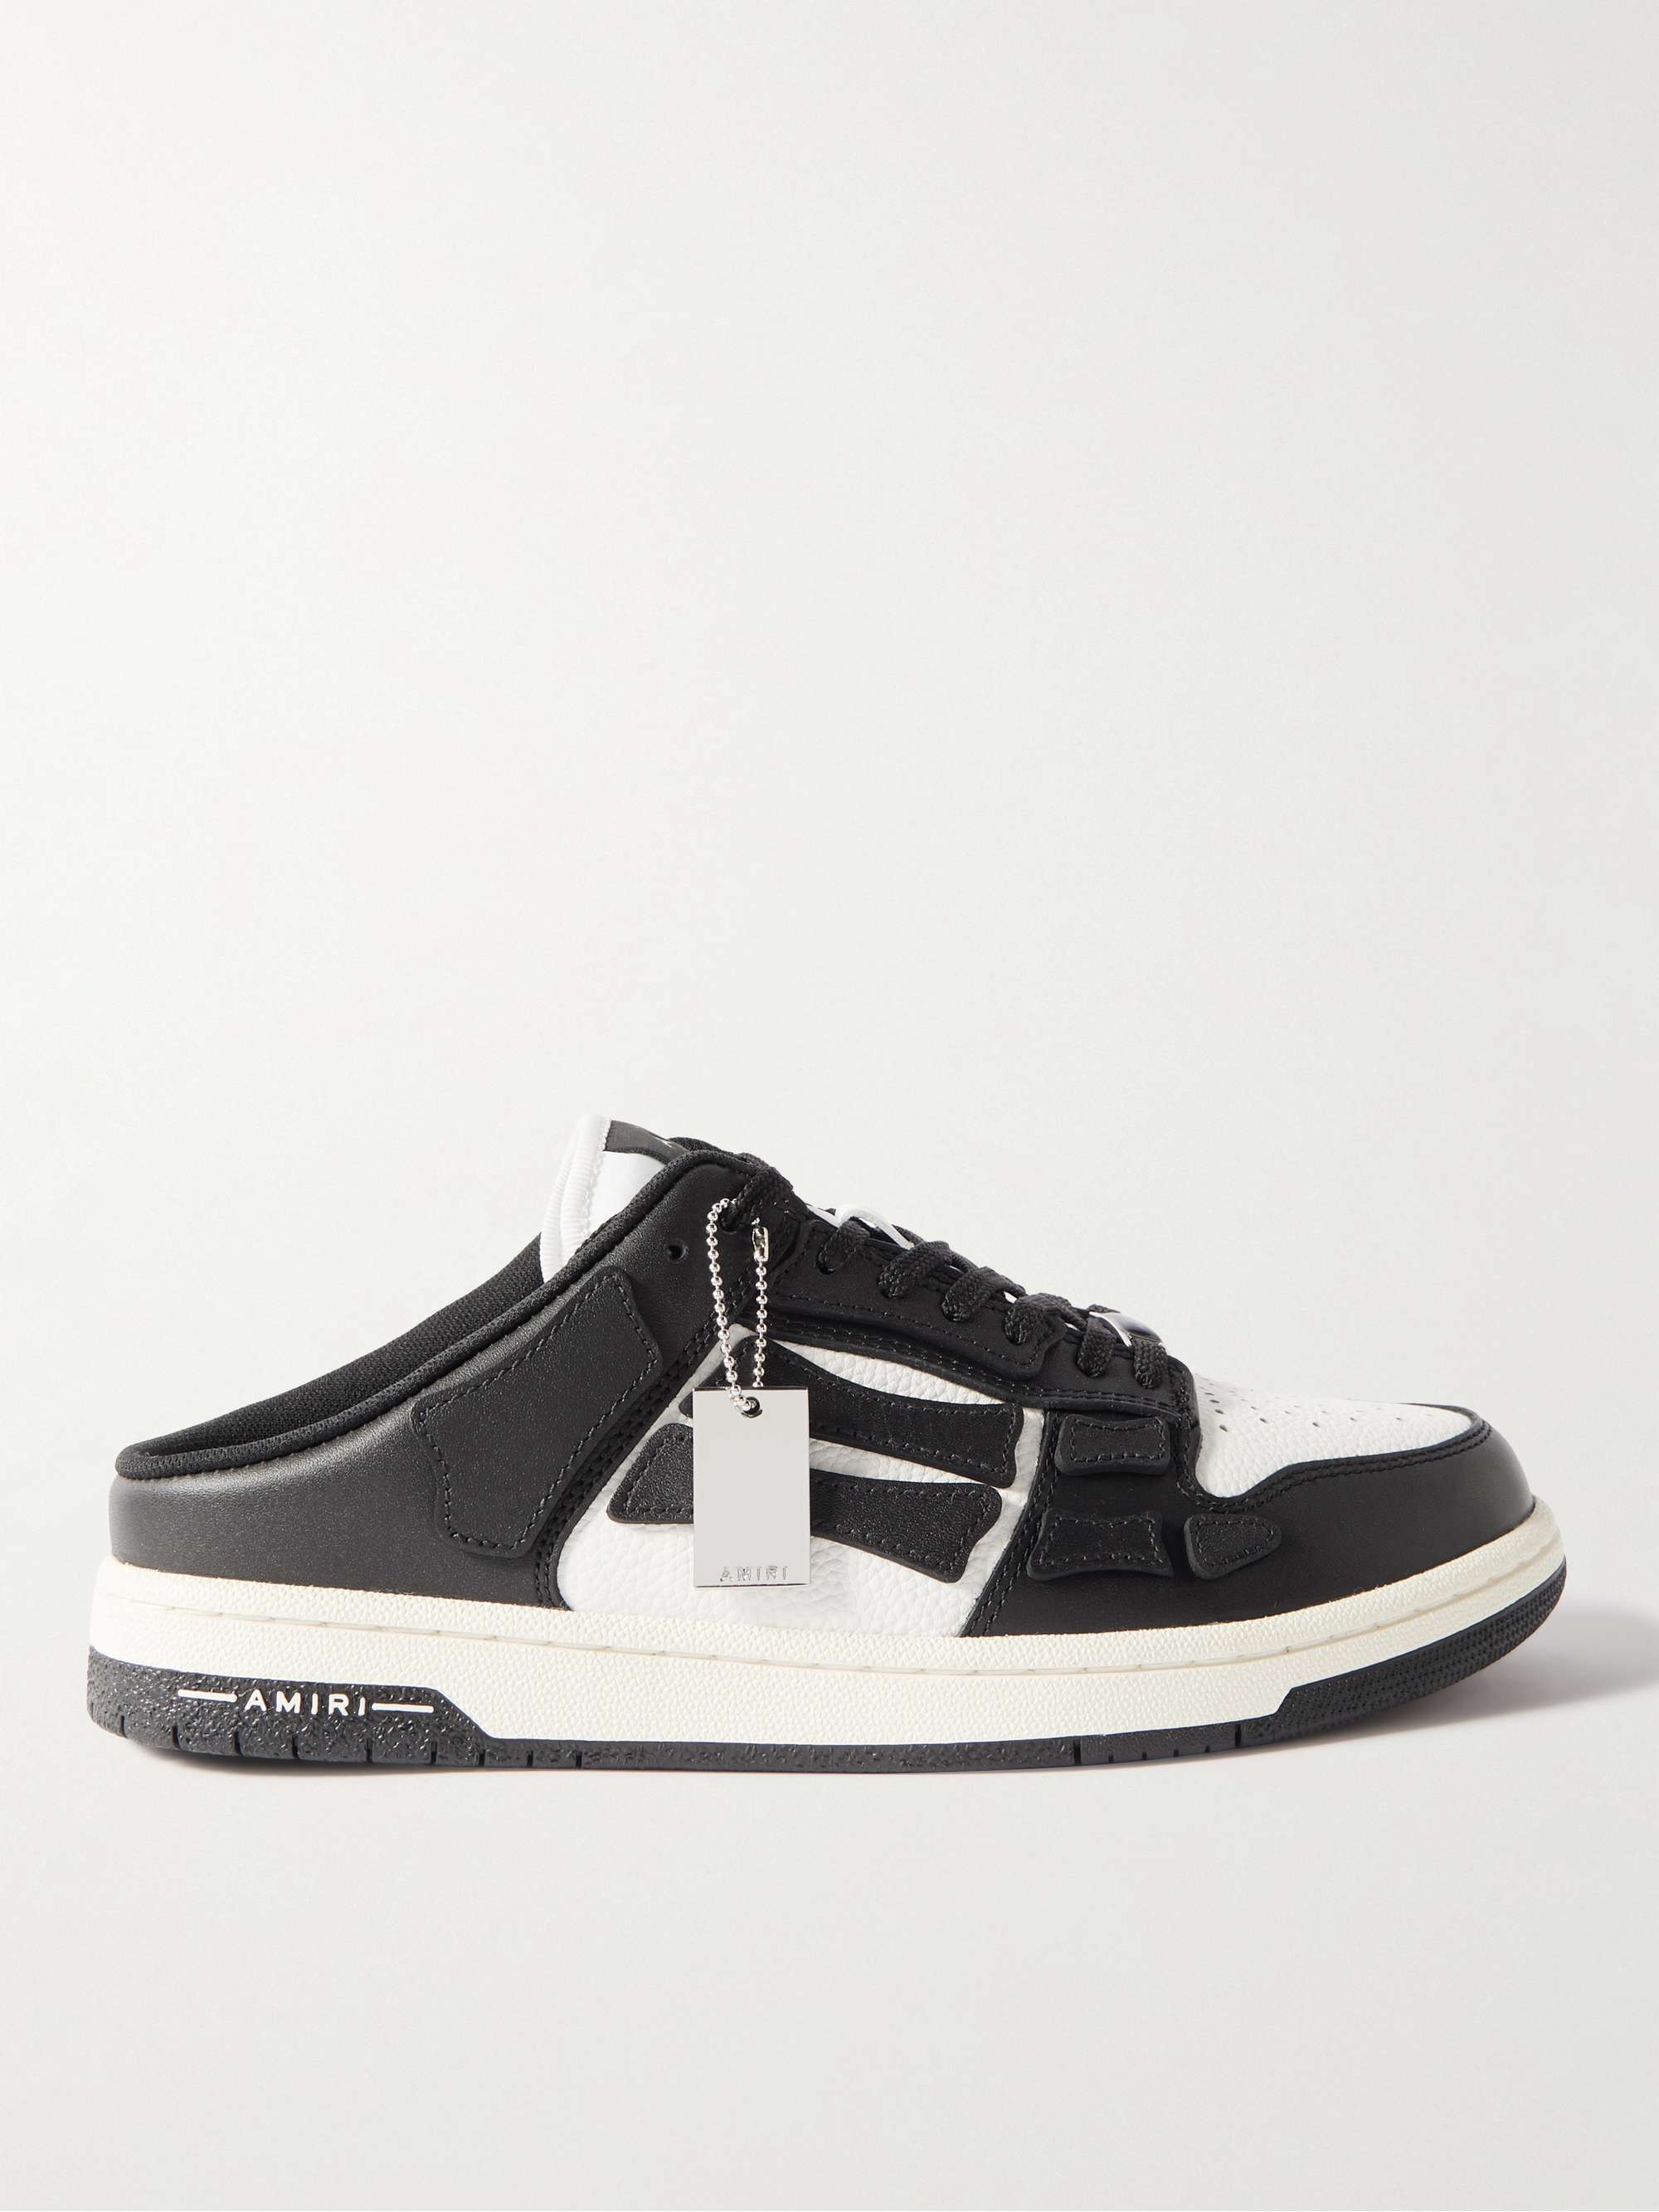 AMIRI Skel-Top Colour-Block Leather Slip-On Sneakers